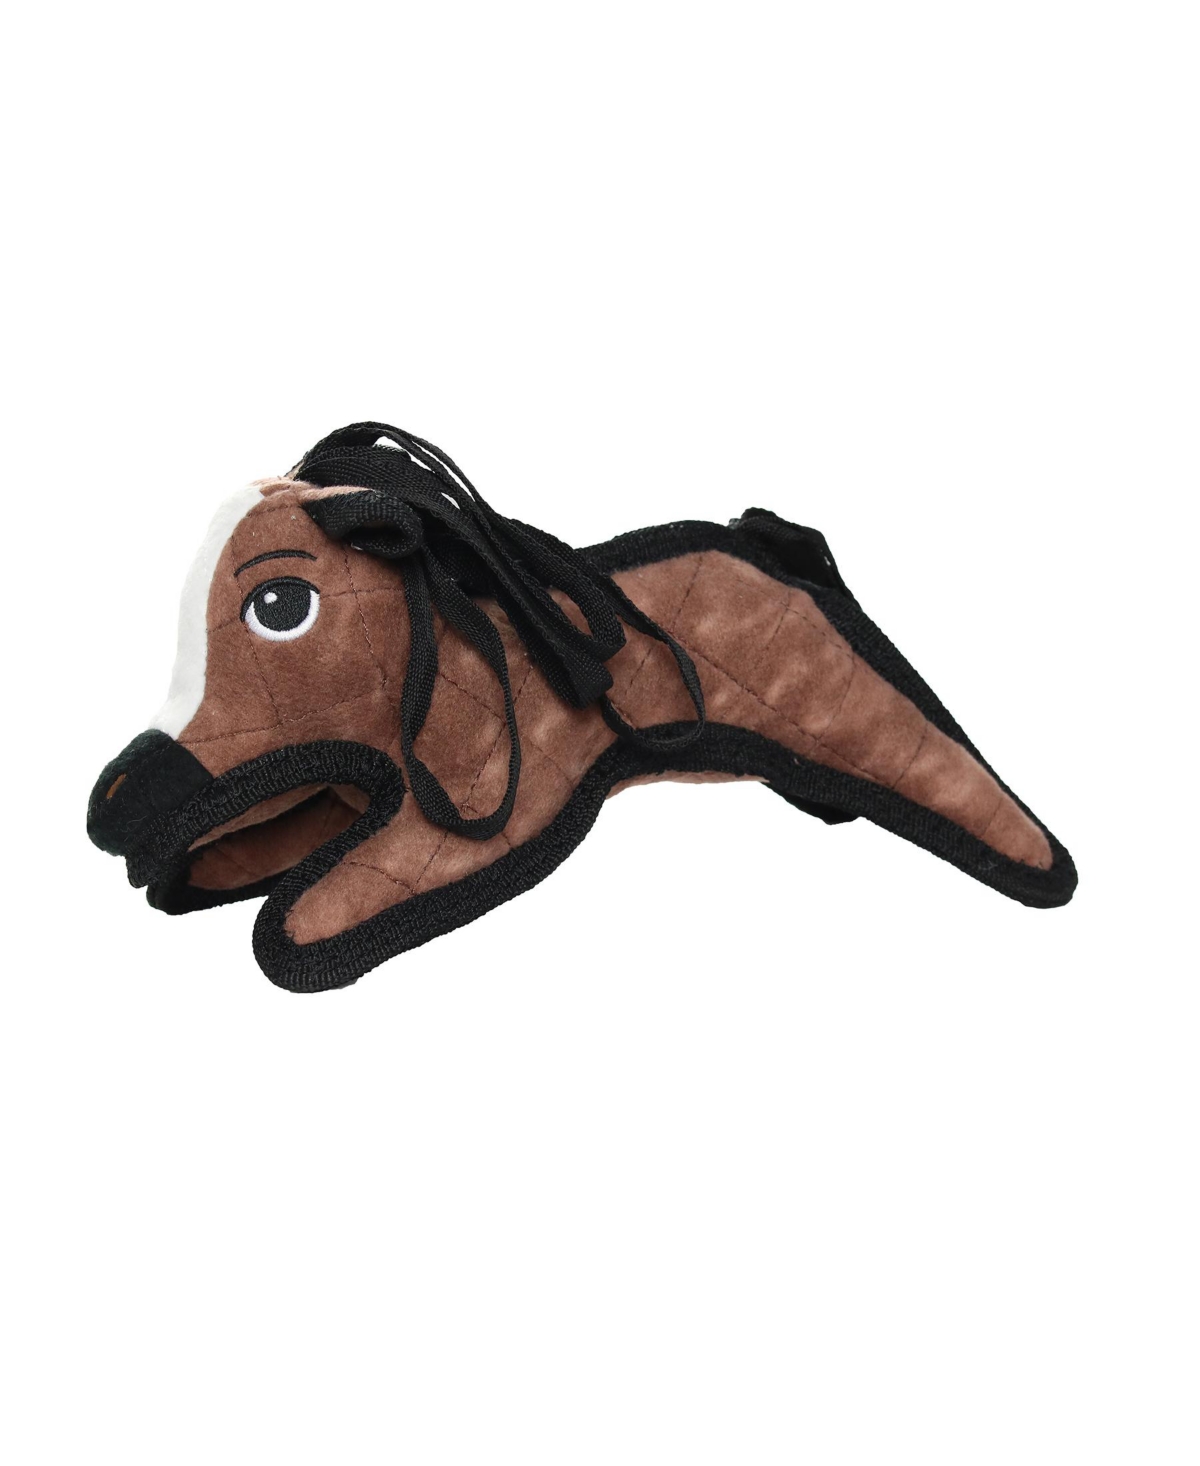 Jr Barnyard Pony, Dog Toy - Medium Brown